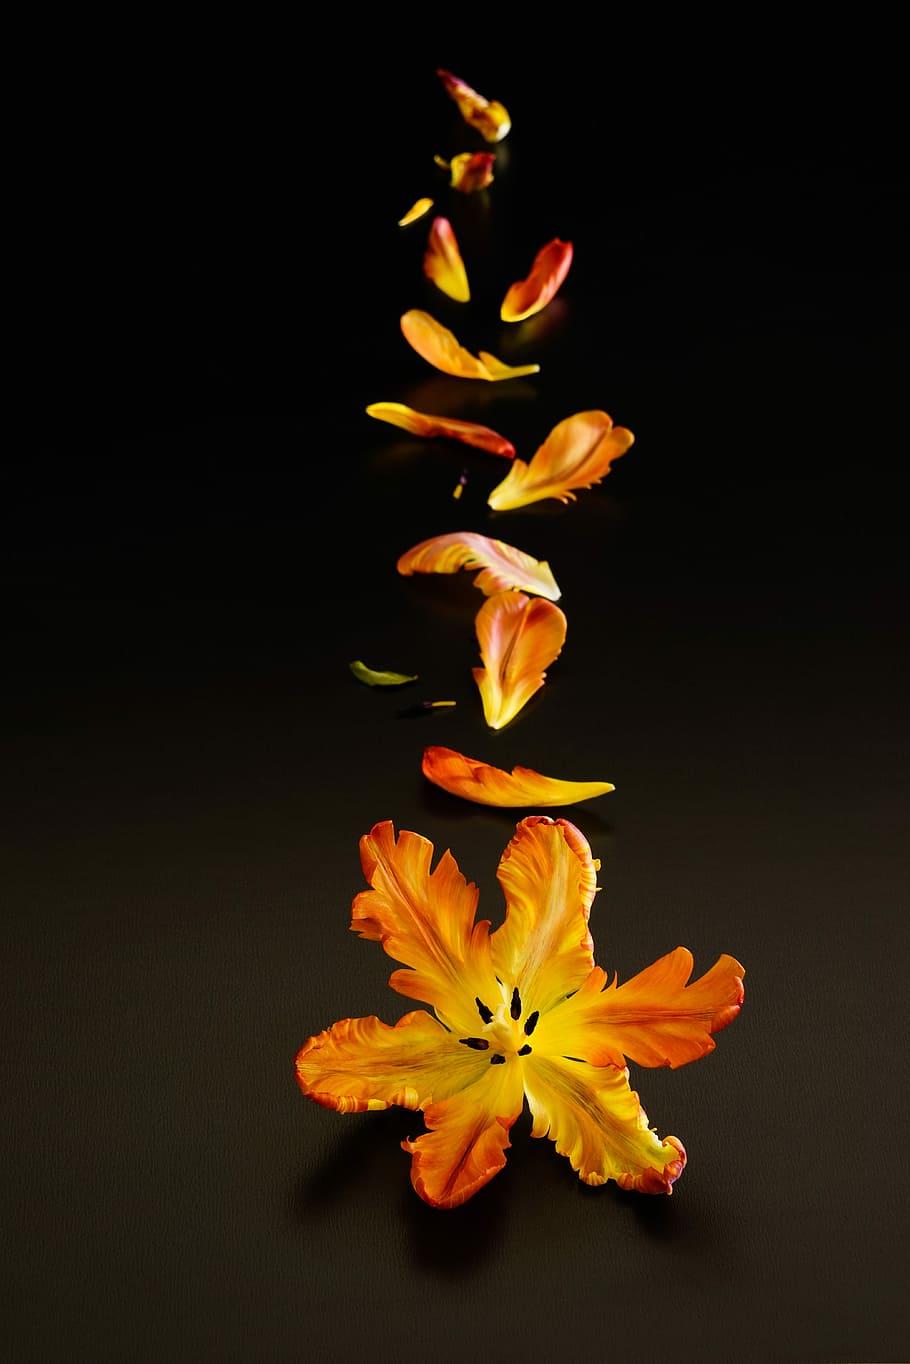 黄色 オレンジ 花びらの花 落ちる まだ生命の一過性 Tulpenbluete 花びら 配置 黒の背景 オレンジ黄色の花 Pxfuel